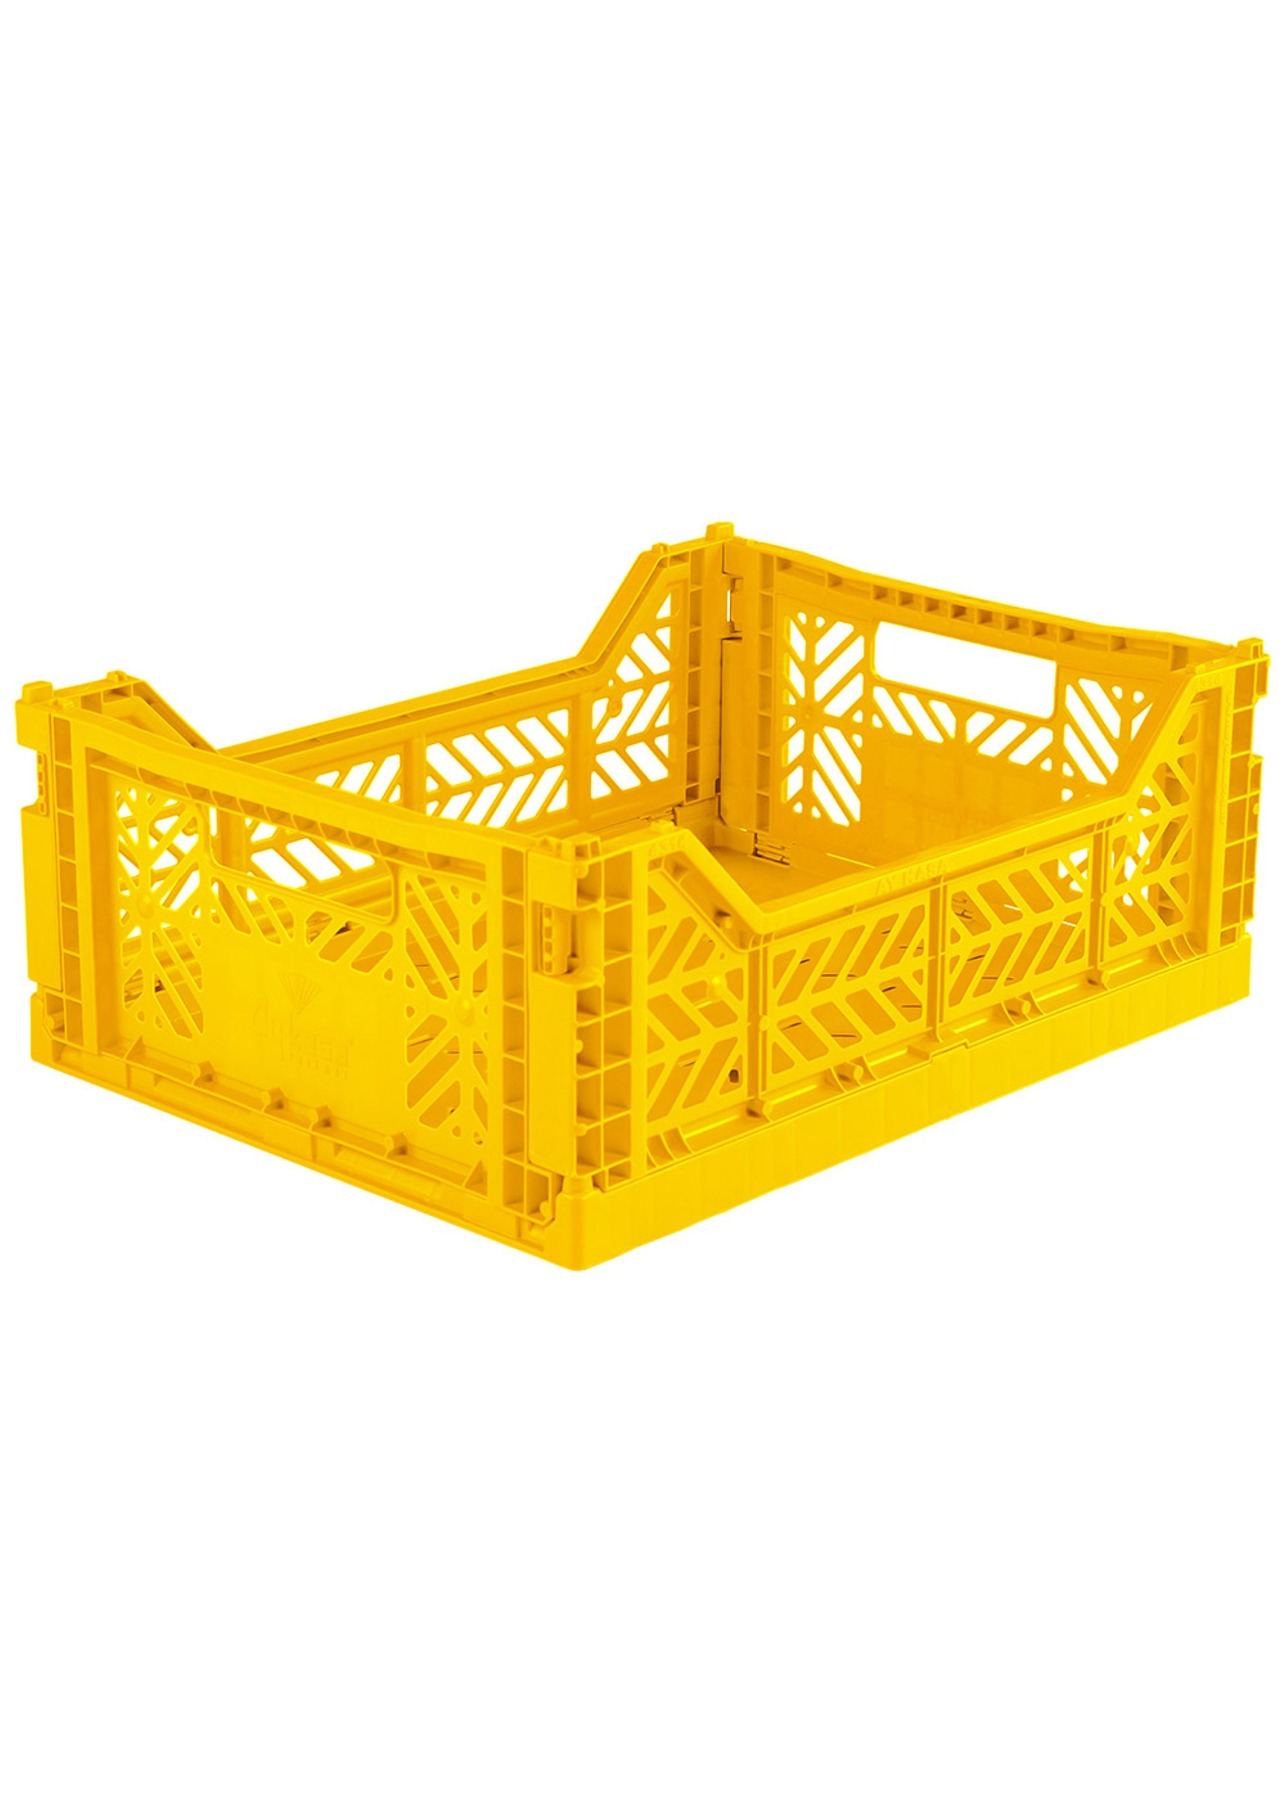 AyKasa Midi Storage Box - yellow